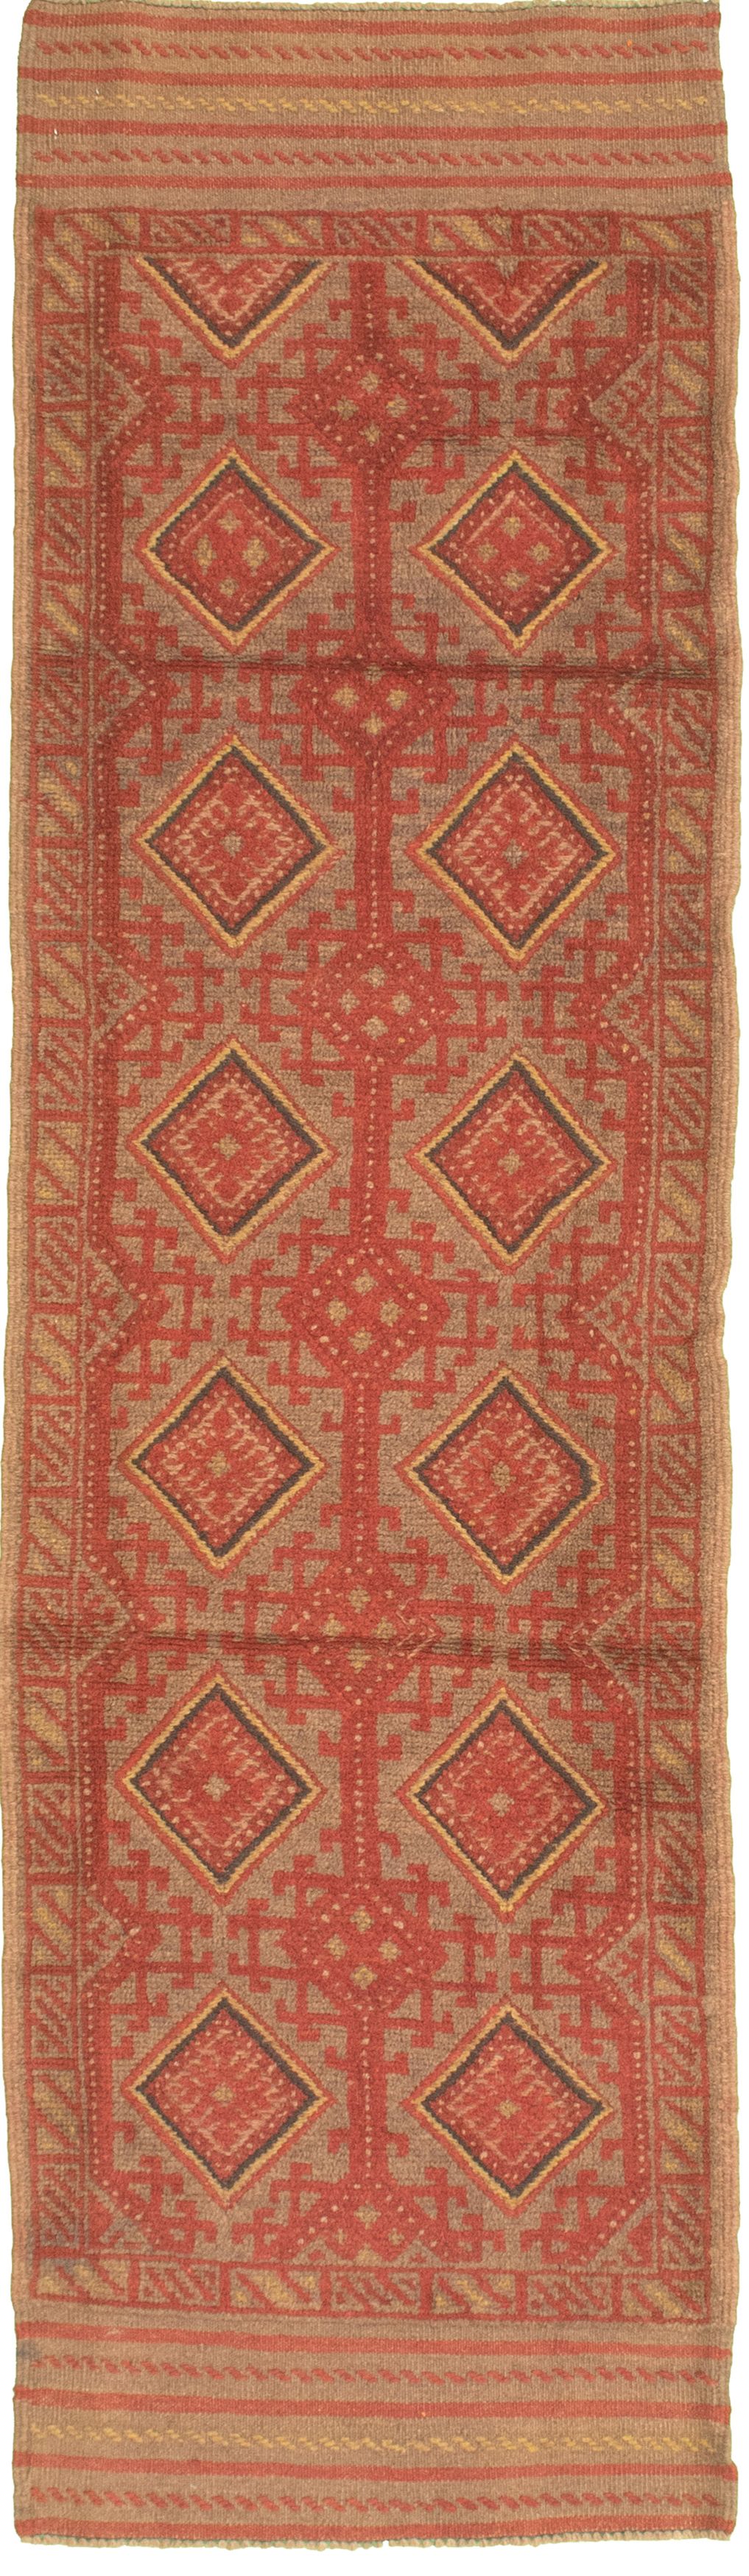 Hand-knotted Tajik Caucasian Khaki Wool Rug 2'0" x 8'5" Size: 2'0" x 8'5"  